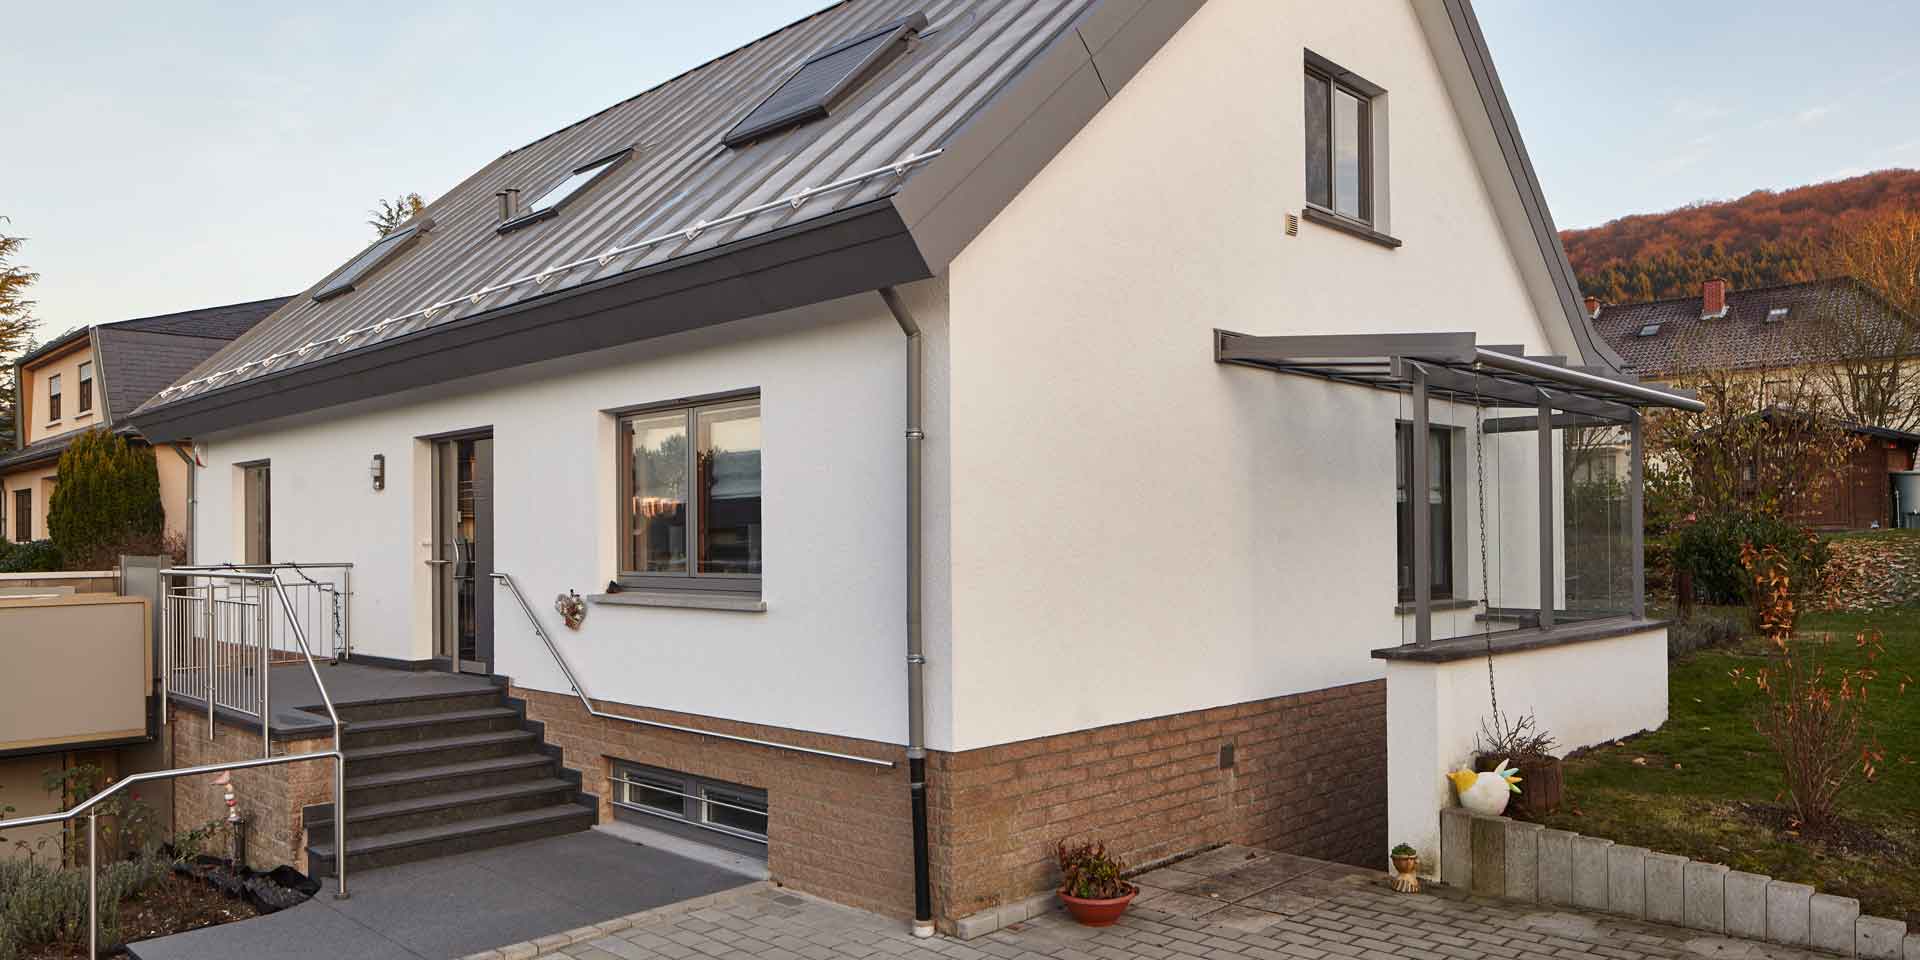 Weißes Einfamilienhaus von rechts gesehen mit einer neuen modernen grauen Coplaning Haustür und grauen Coplaning Holz Alu Fenster.